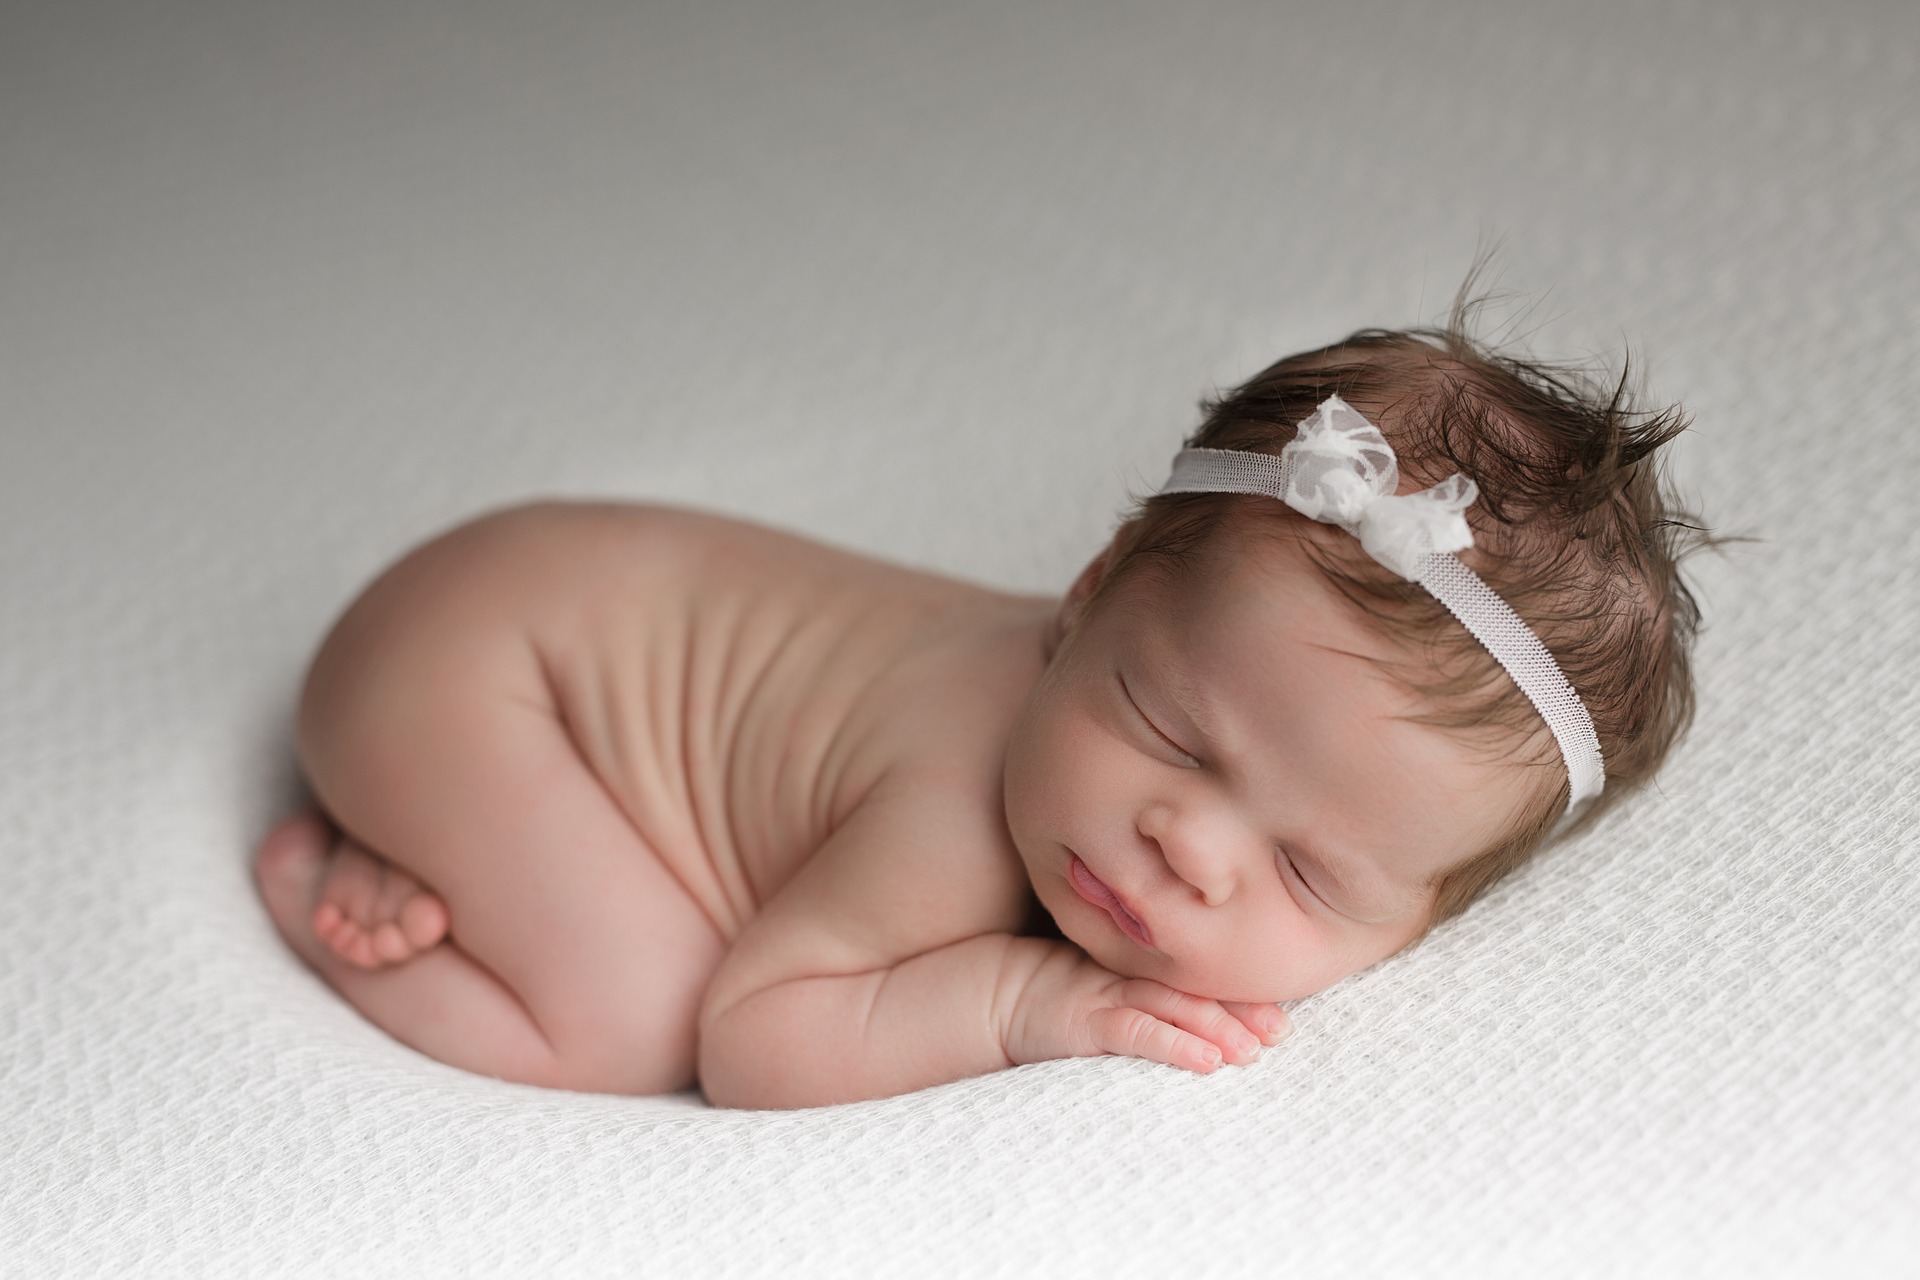 Când ședintele foto pentru nou-născuți pot deveni periculoase: ce spun specialiștii